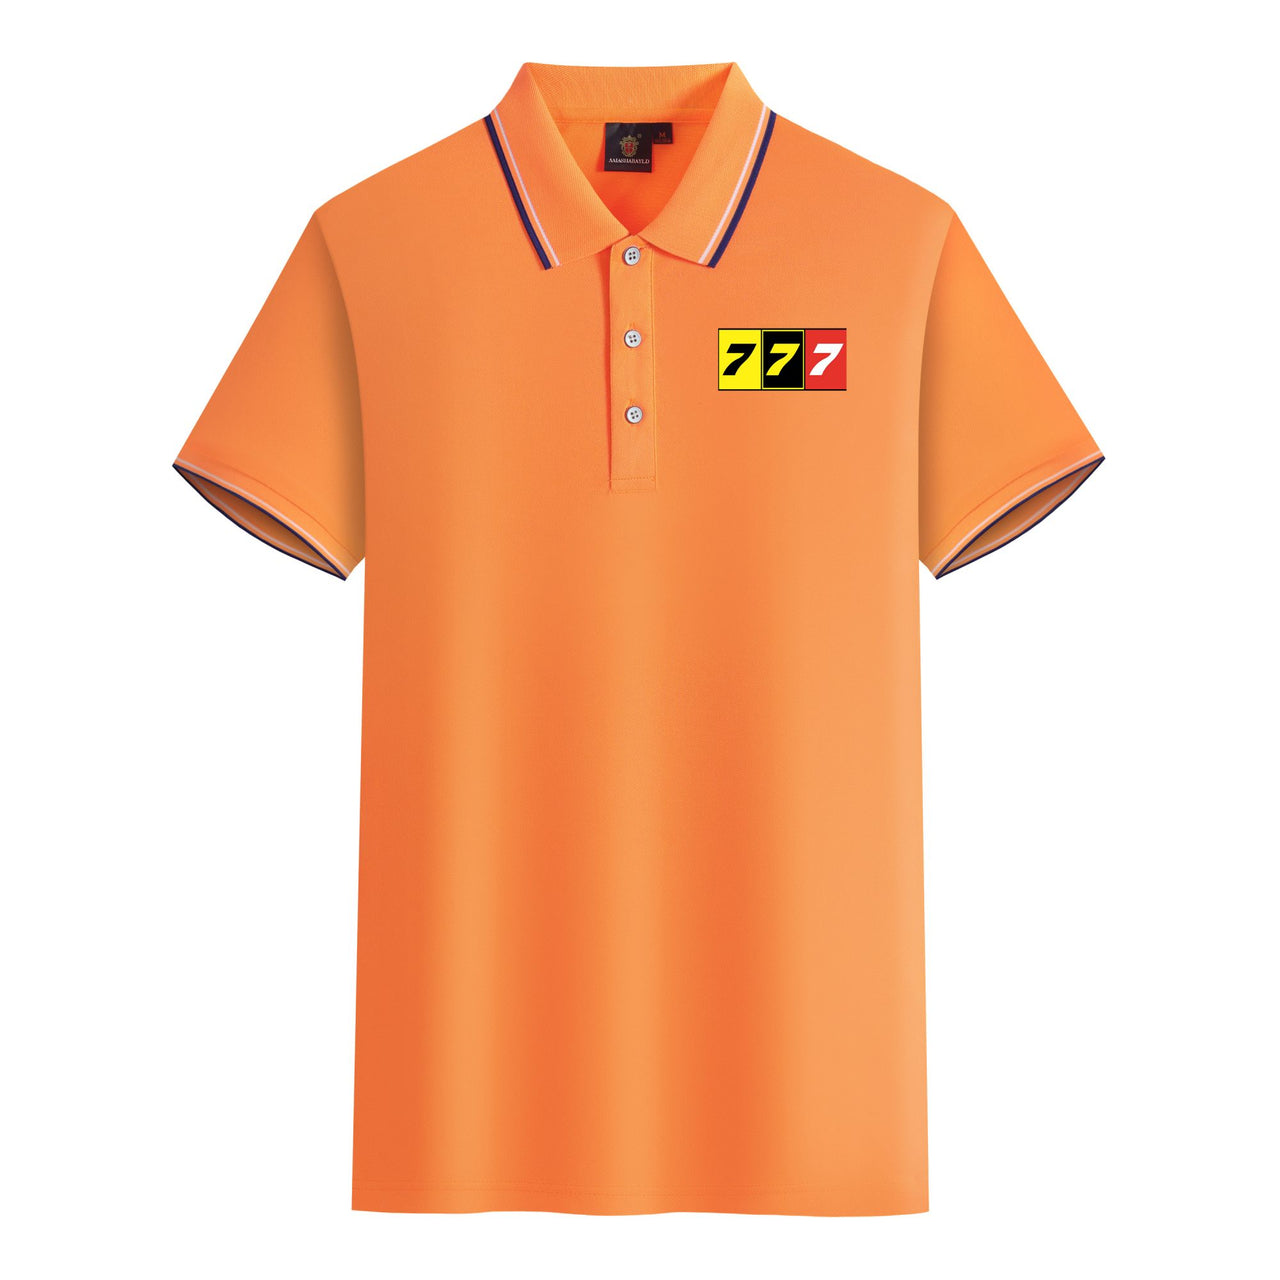 Flat Colourful 777 Designed Stylish Polo T-Shirts